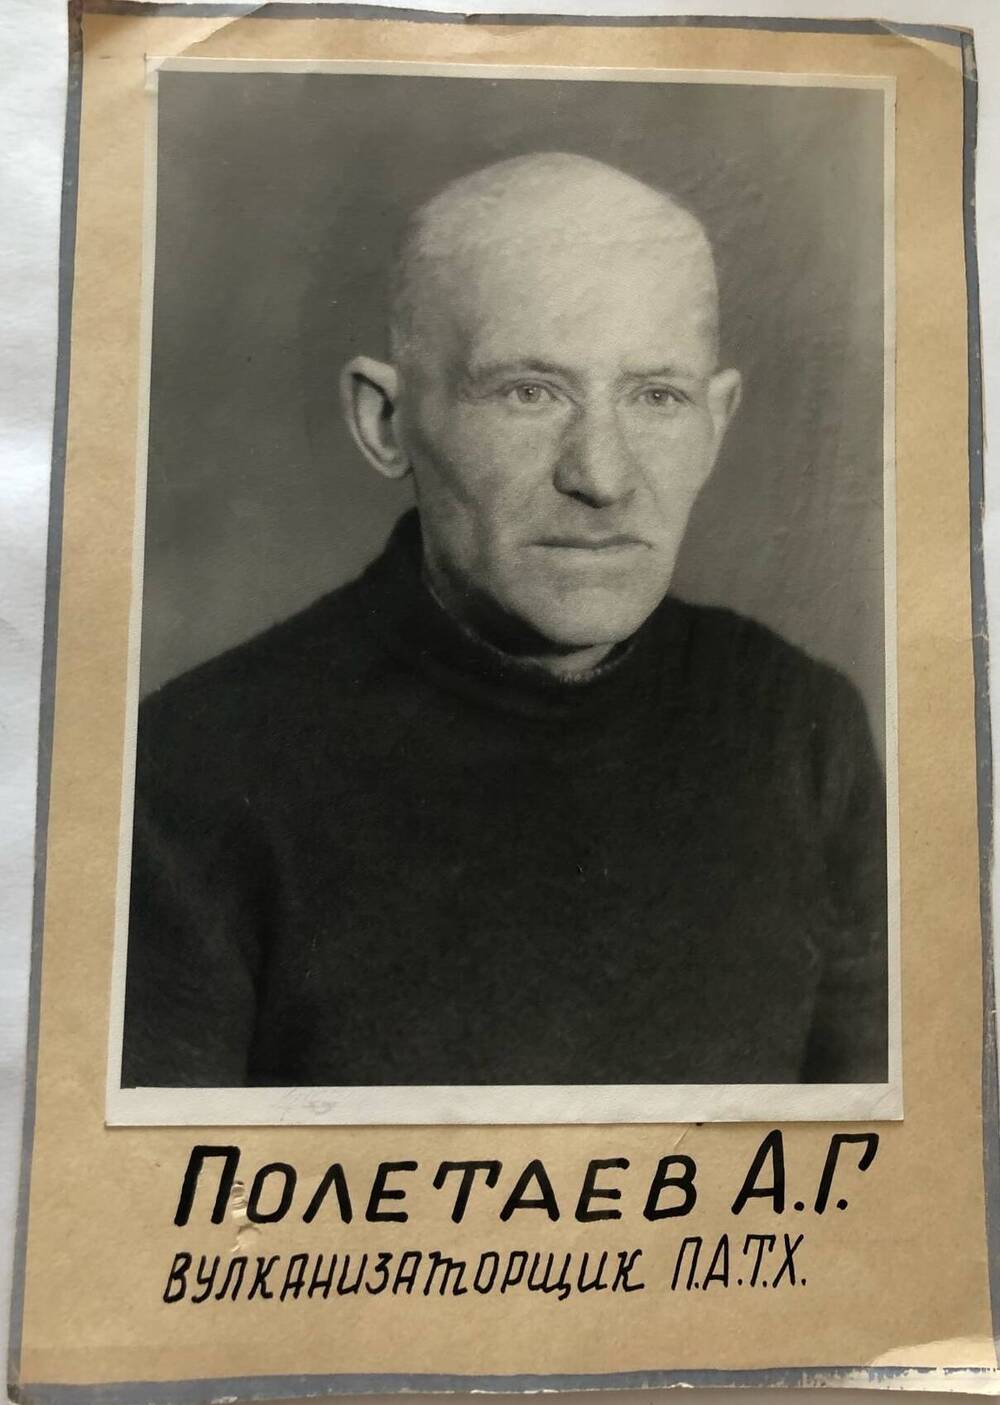 Фотография Полетаева А.Г., камышанина, участника Великой Отечественной войны 1941-1945 гг., защитника Сталинграда